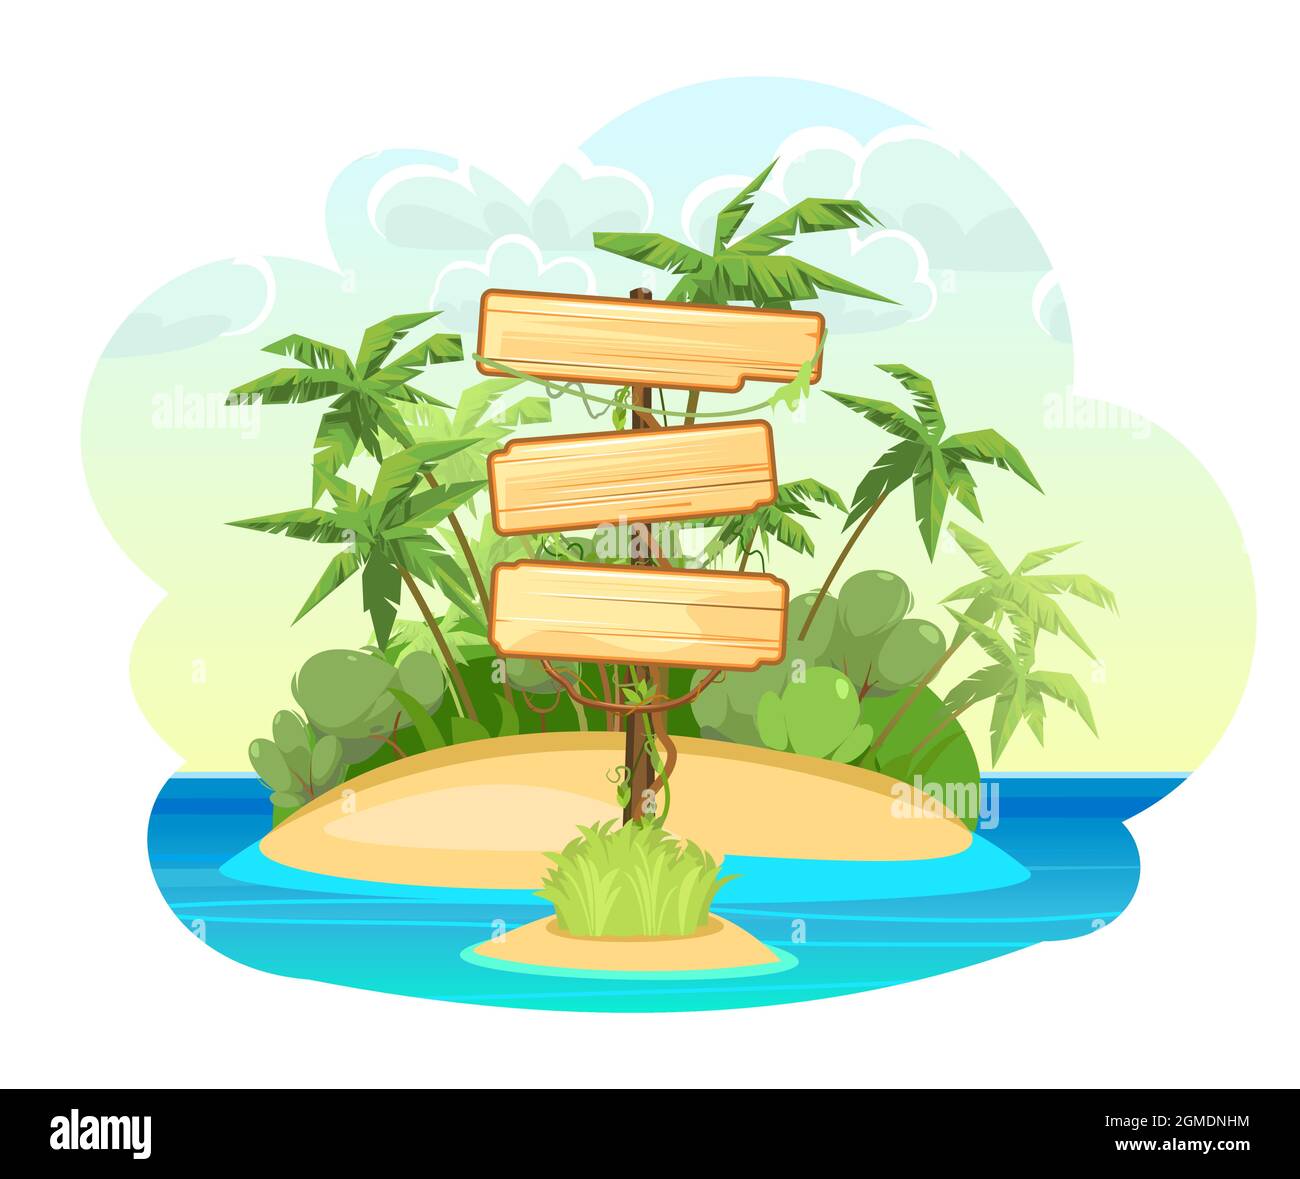 Holzschild auf der Insel im Meer. Drei Bedeutungen. Cartoon-Stil. Blaues ruhiges Meer. Dschungelpalmen. Flache Abbildung. Isoliert auf Weiß Stock Vektor